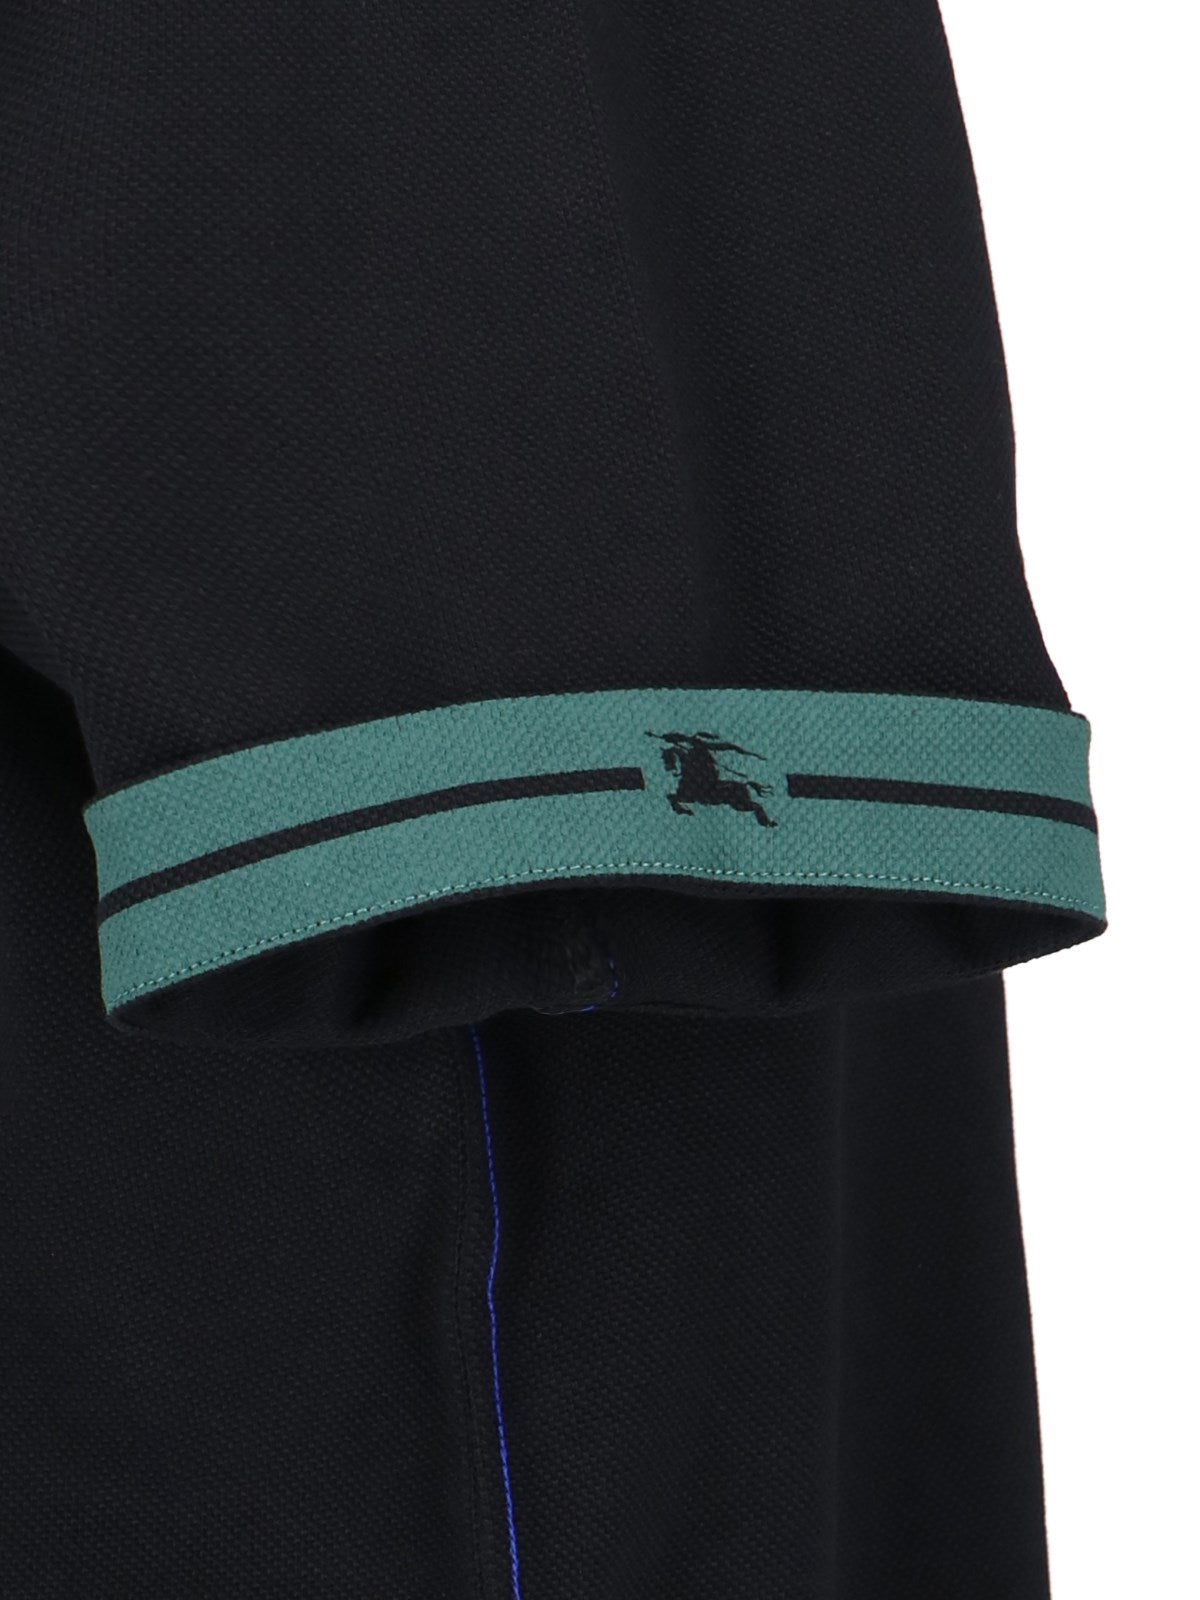 Burberry T-Shirt polo-t-shirt-Burberry-T-shirt polo Burberry, in cotone nero, colletto classico, bottone fronte, dettagli verdi maniche, cuciture blu laterali, orlo dritto.-Dresso